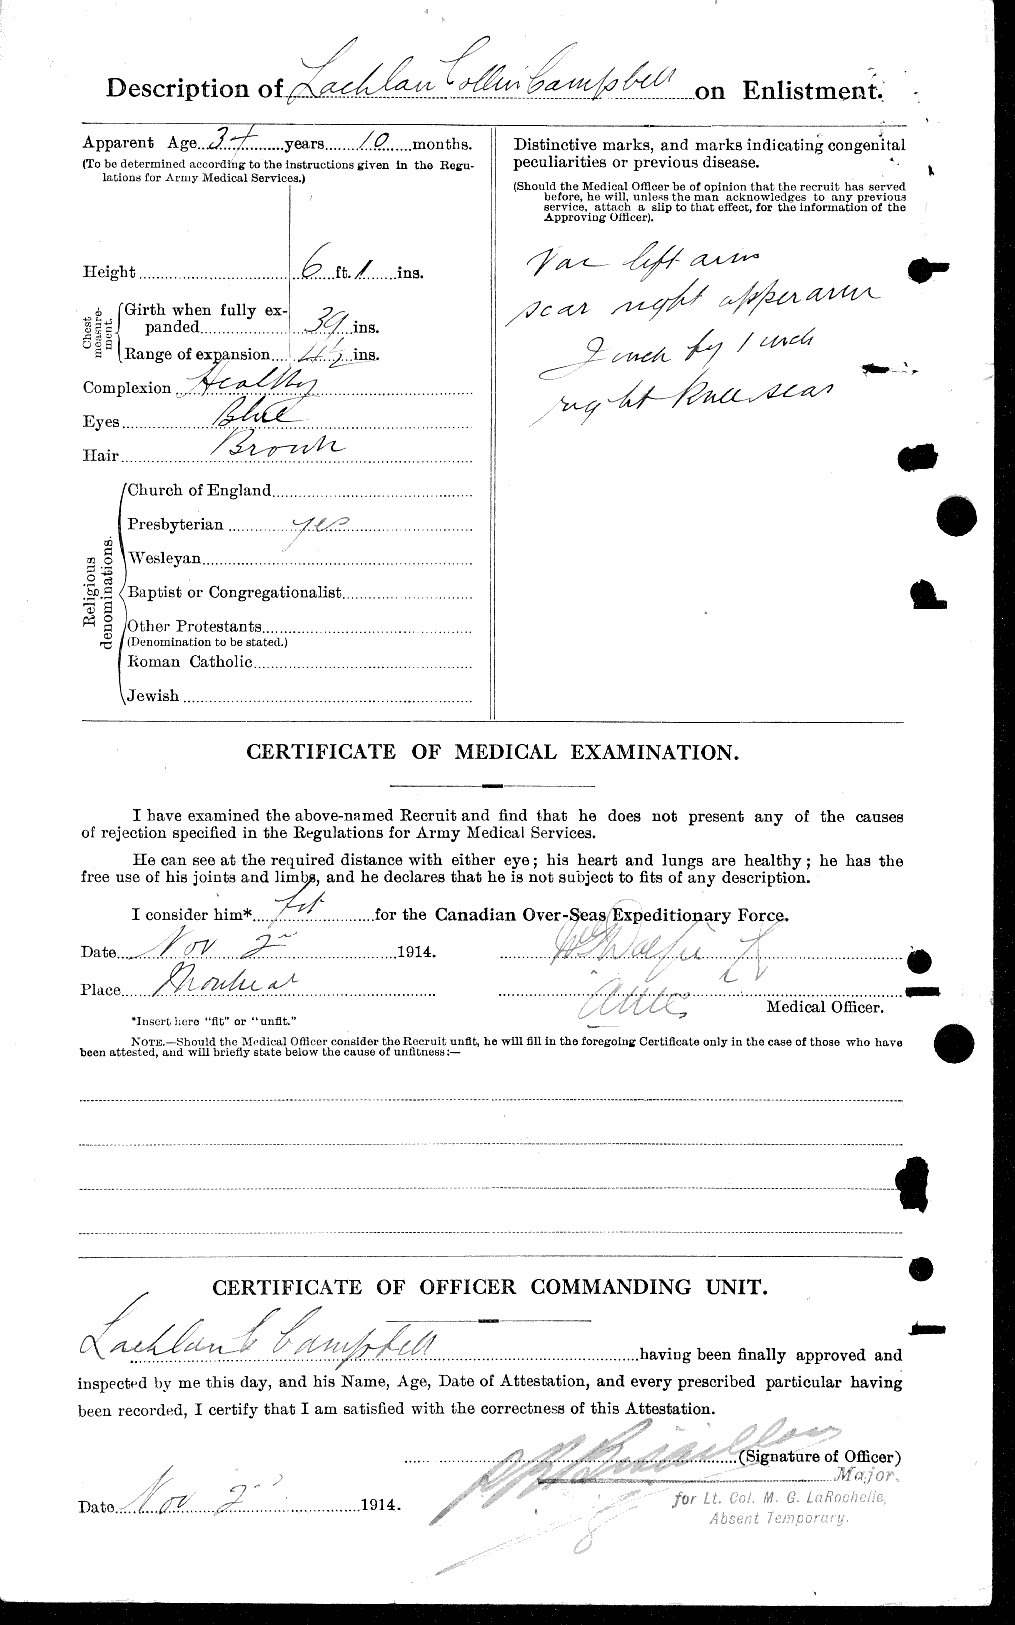 Dossiers du Personnel de la Première Guerre mondiale - CEC 002776b